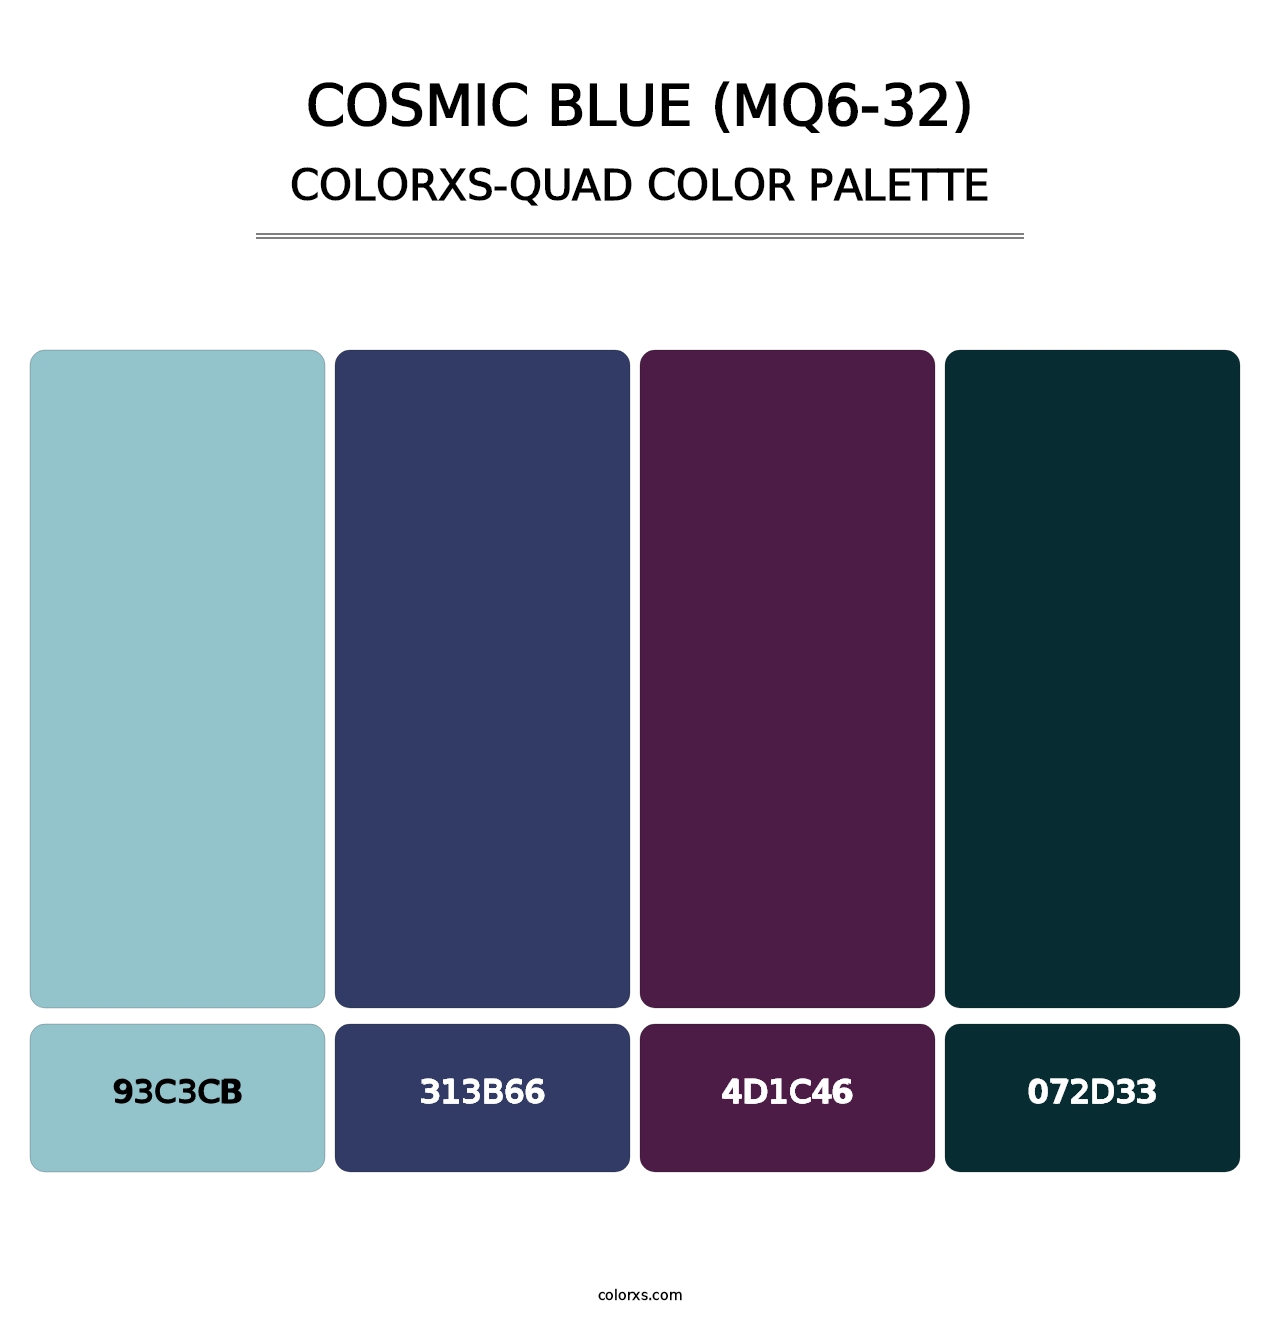 Cosmic Blue (MQ6-32) - Colorxs Quad Palette